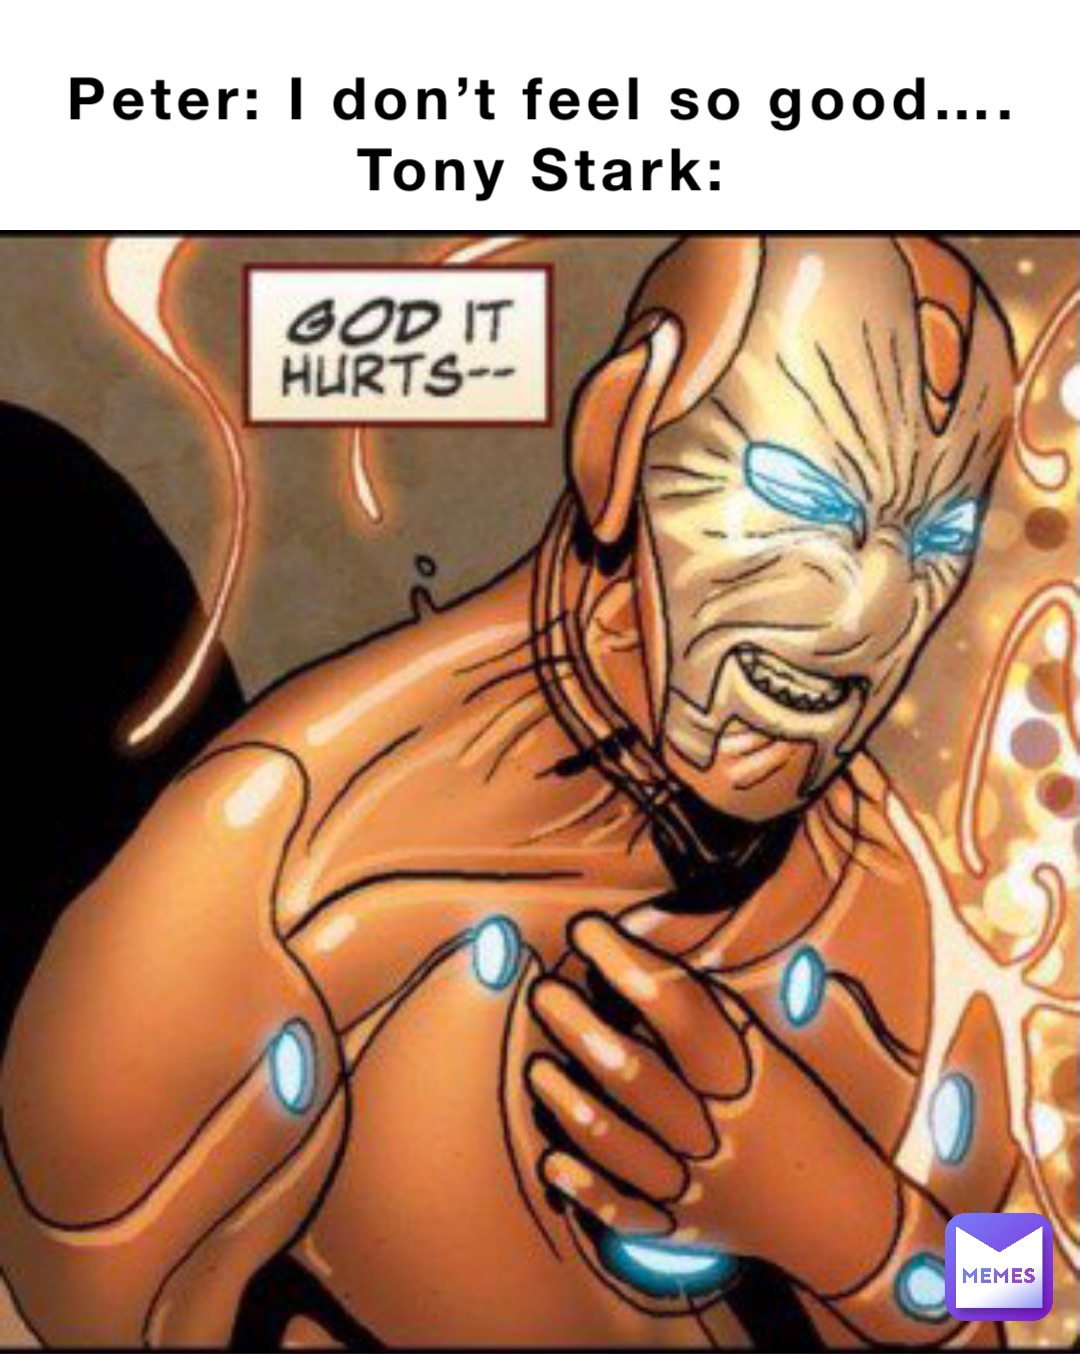 Peter: I don’t feel so good….
Tony Stark: